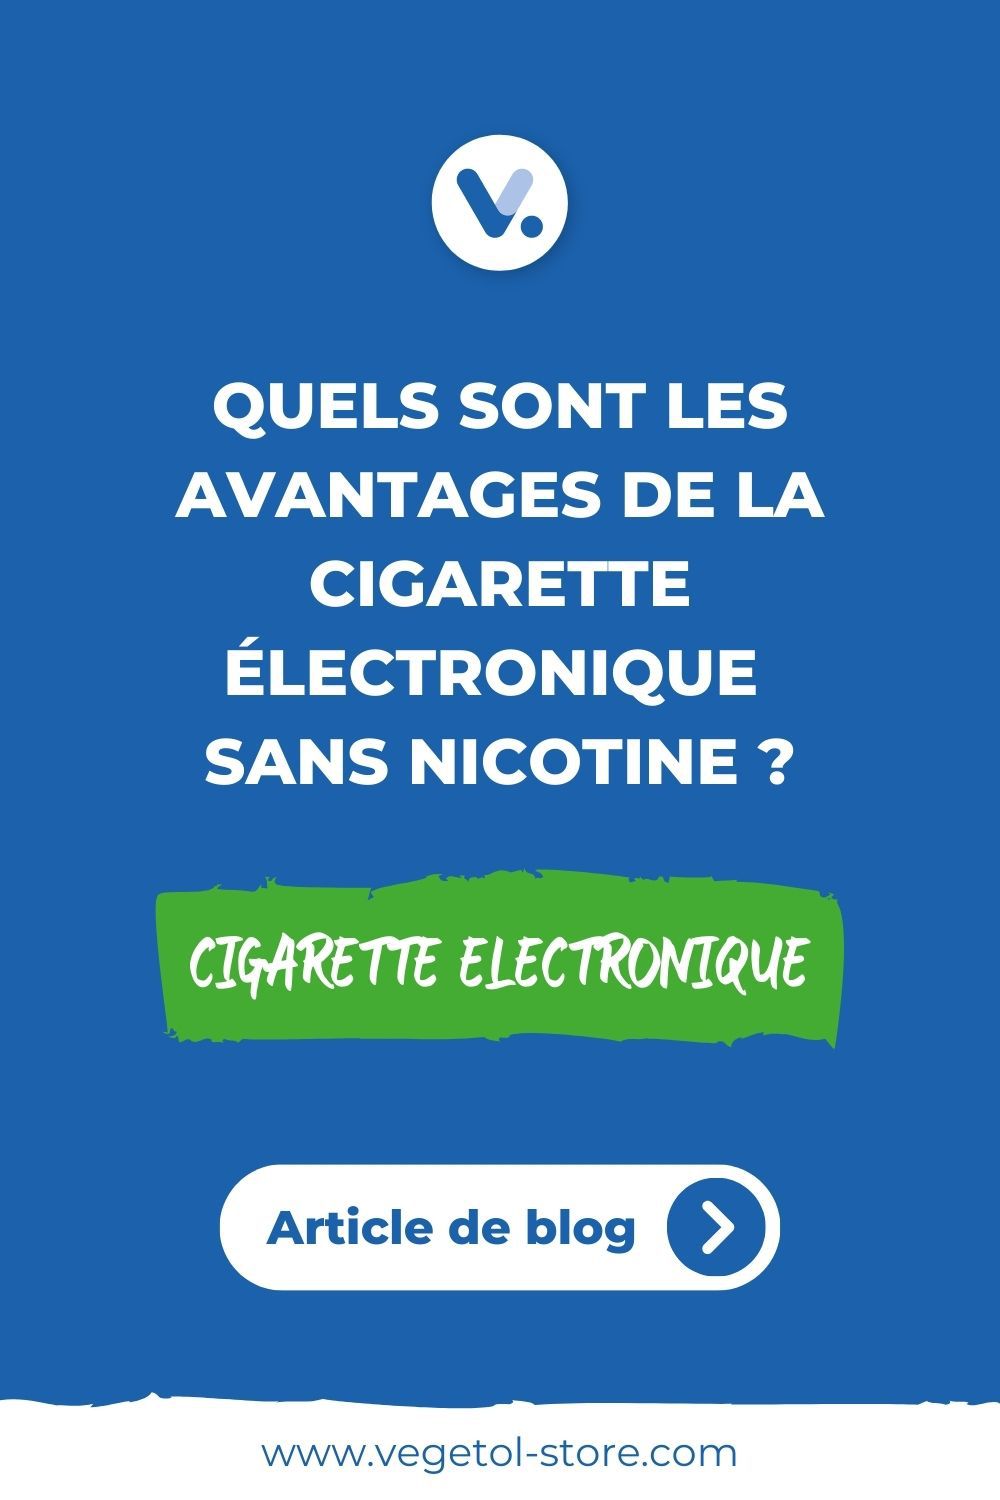 avanatges-cigarette-electronique_sans-nicotine